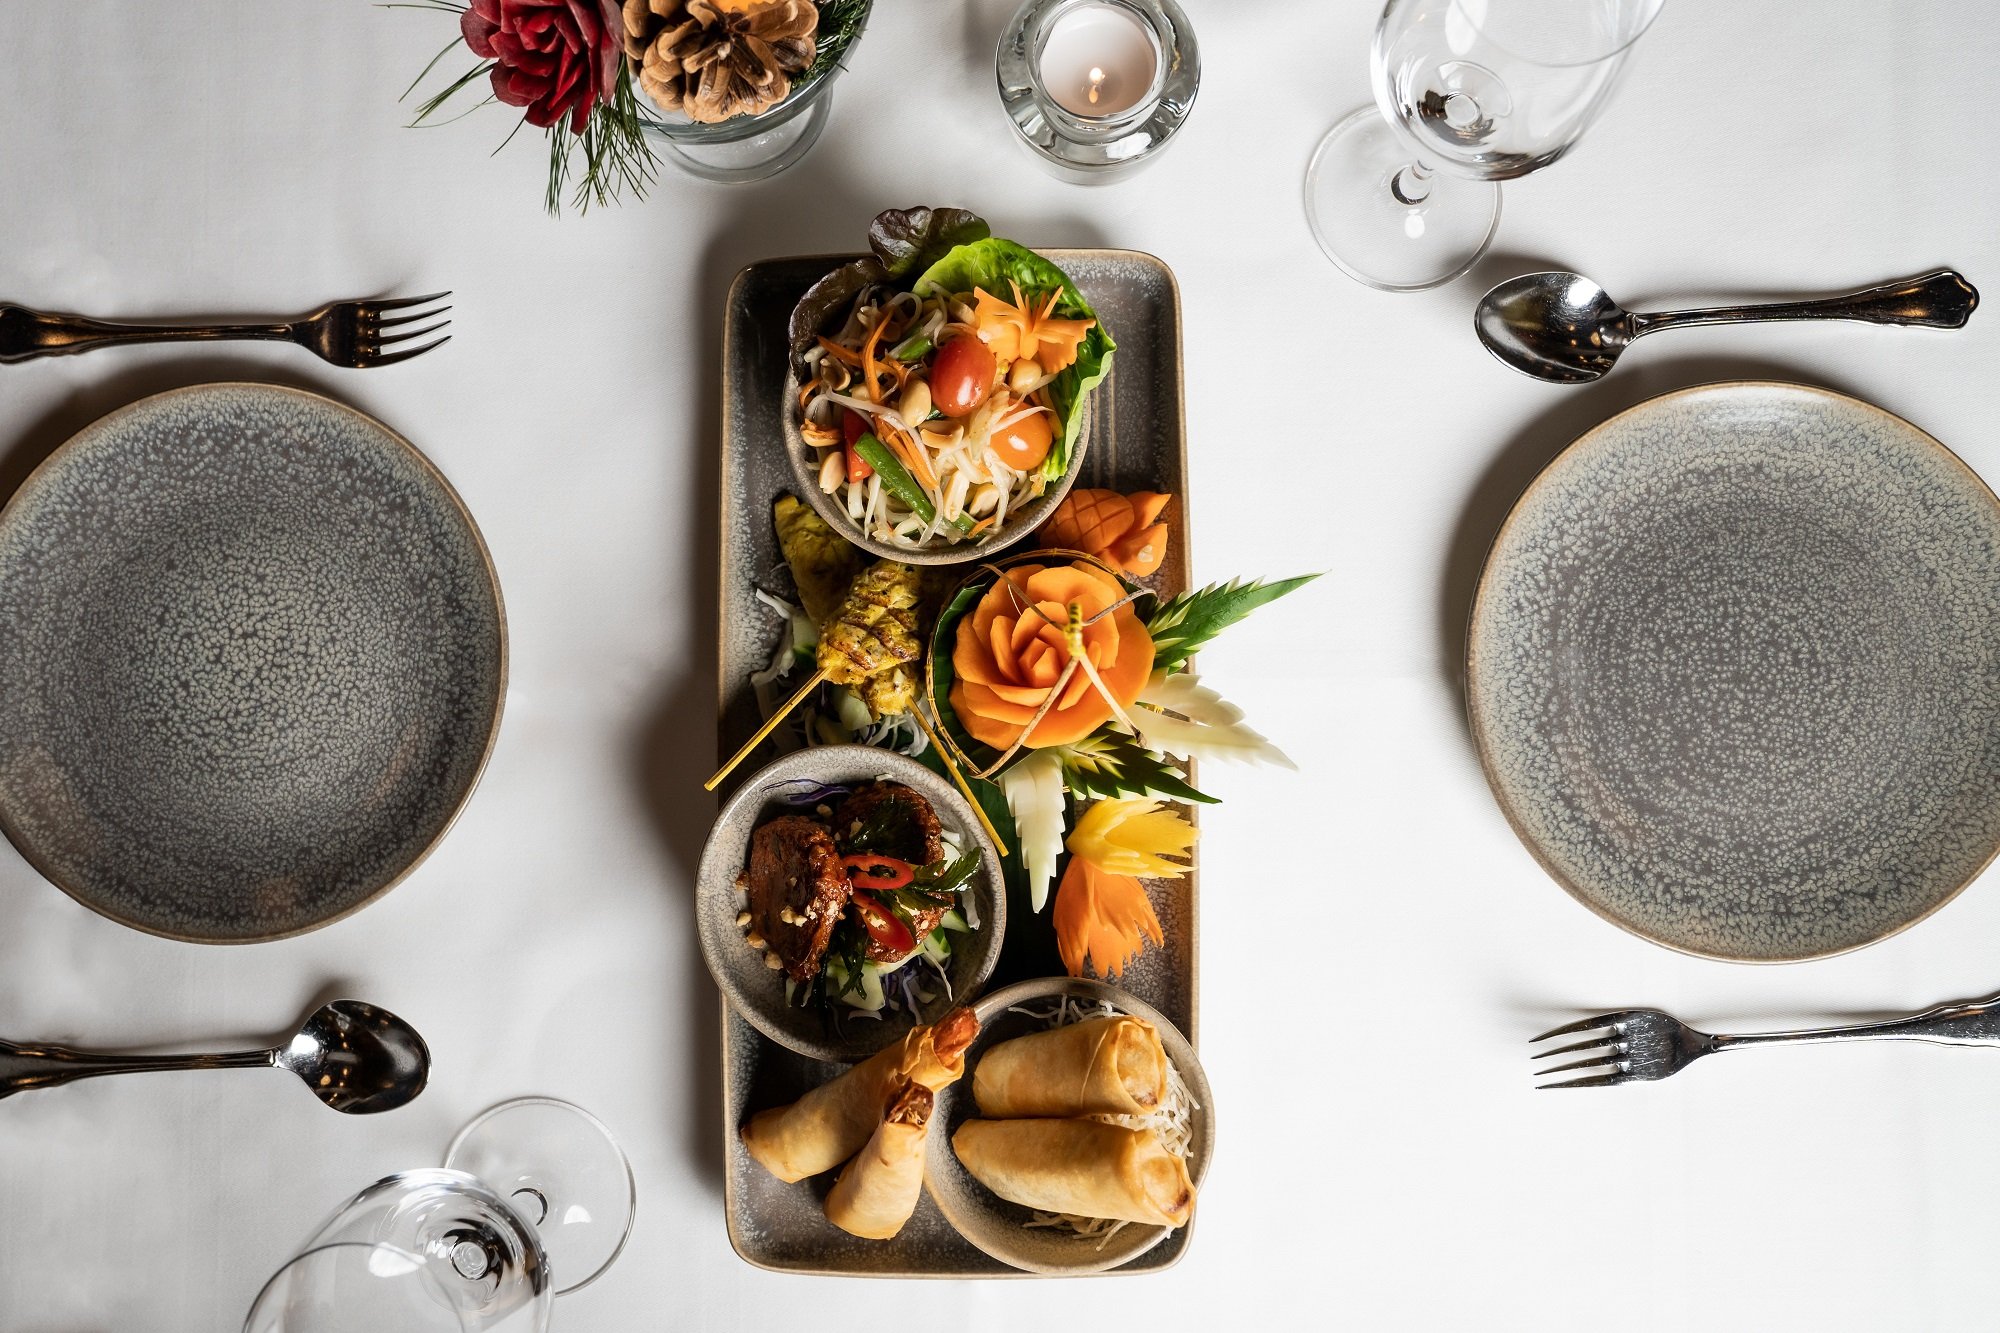 Asiatische Gerichte Arosa, 5-Sterne-Hotel Kulm, Luxuriöse Gastronomie, Exotische Aromen, Asiatische Küche, Kulinarischer Genuss in Arosa